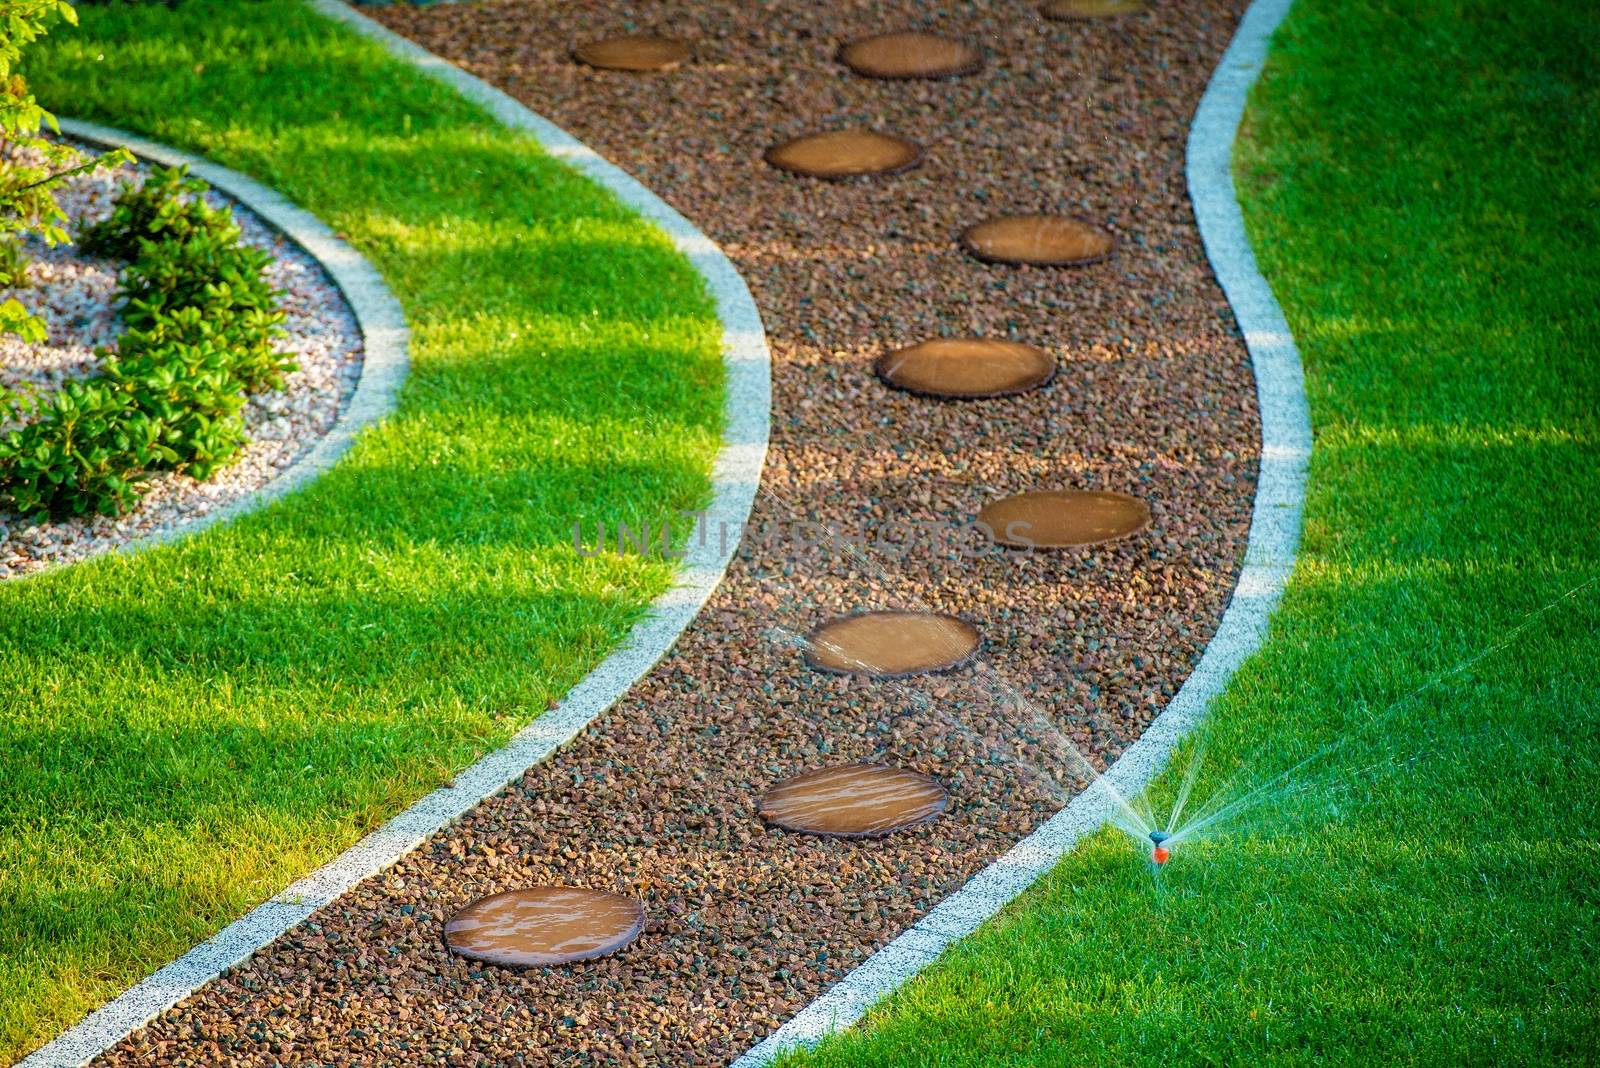 Backyard Lawn Sprinkler by welcomia